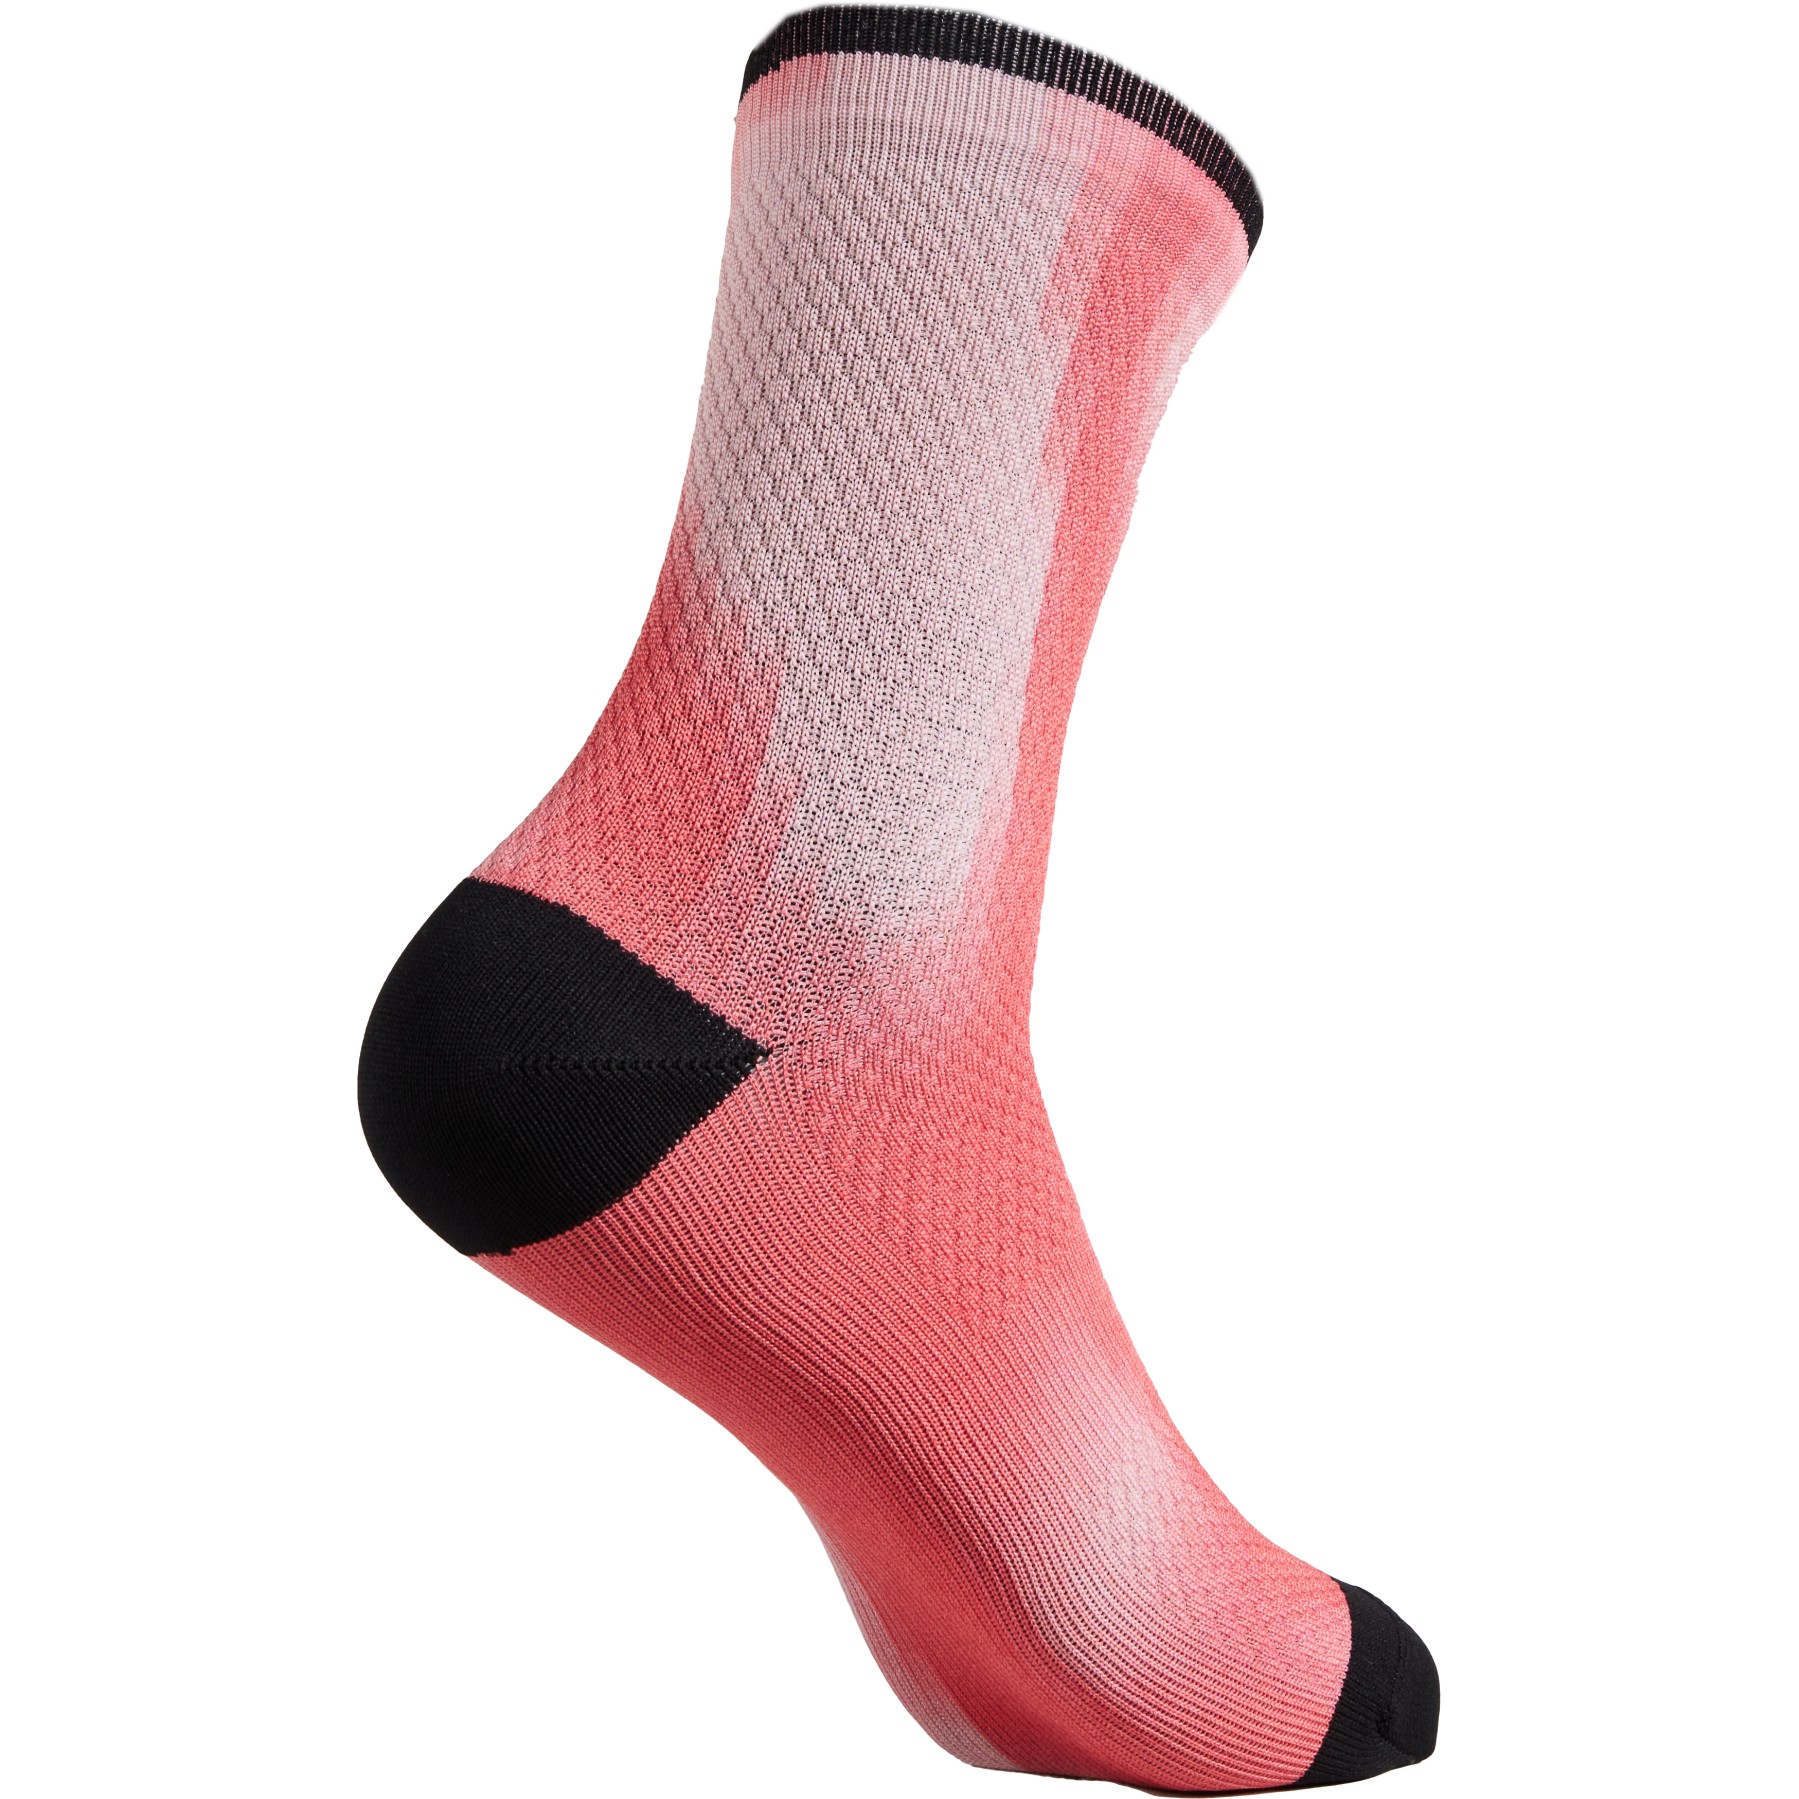 Produktbild von Specialized Soft Air Mid Socken - vivid coral distortion